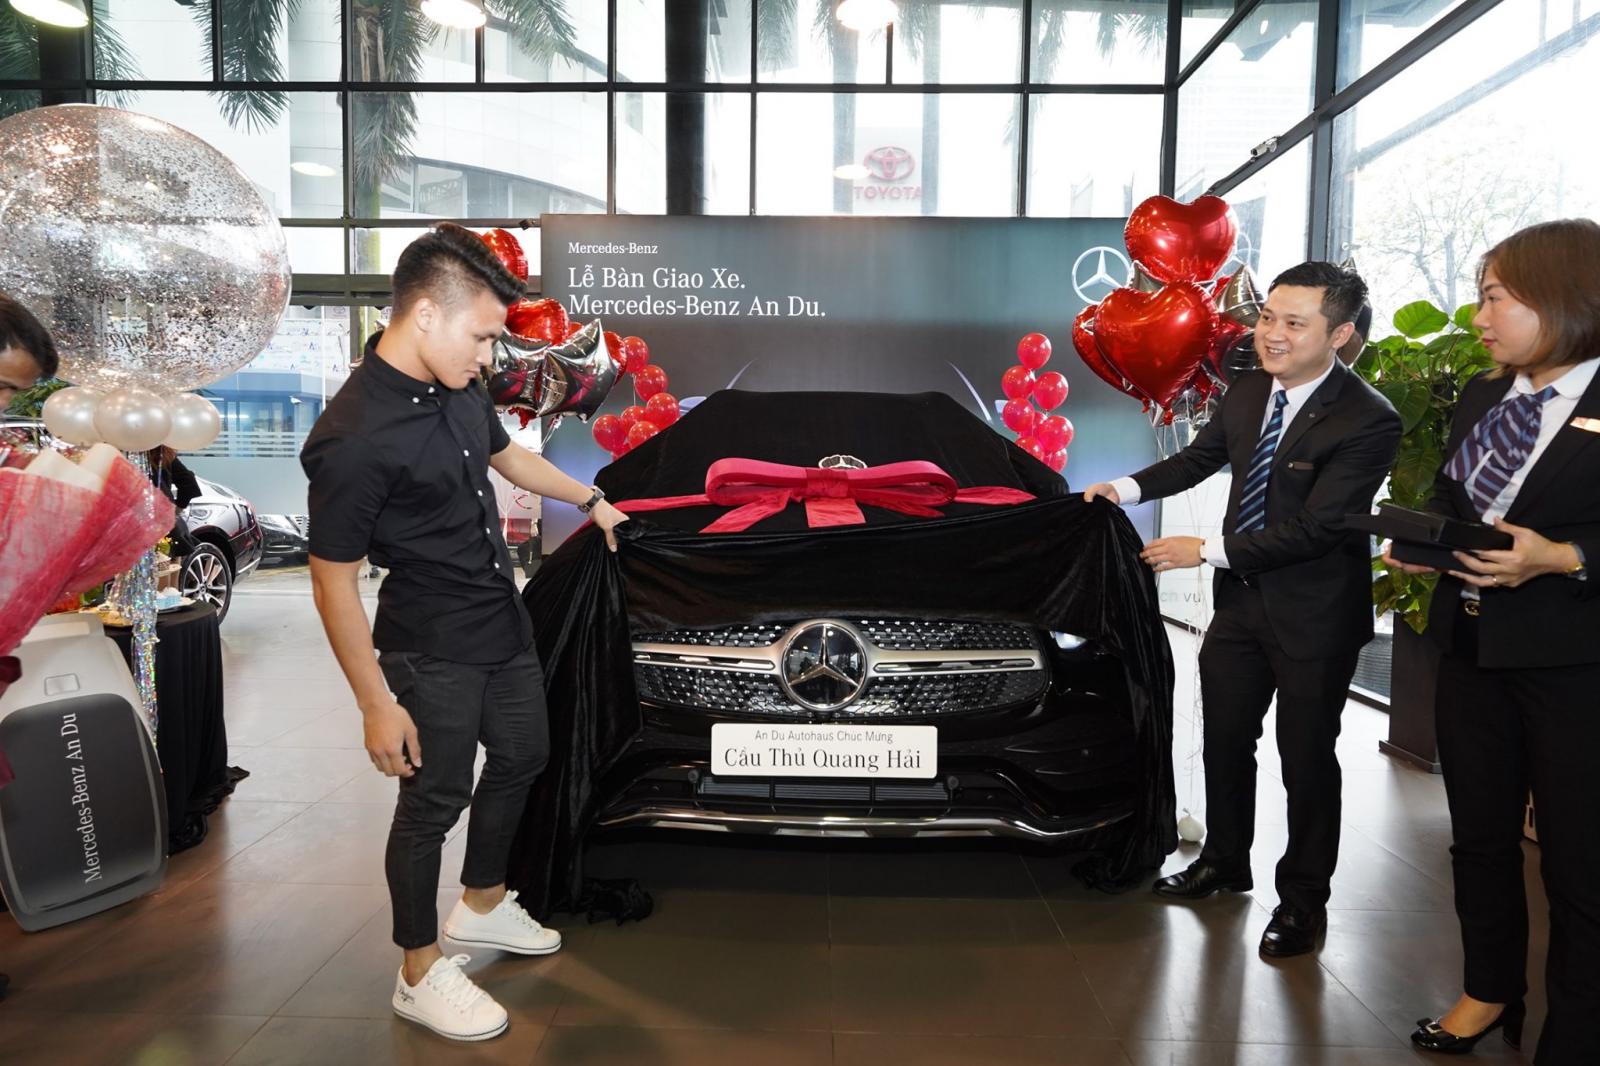 Cầu thủ Quang Hải sắm xế sang Mercedes-Benz GLC 300 4Matic 2020 giá 2,399 tỷ đồng a2